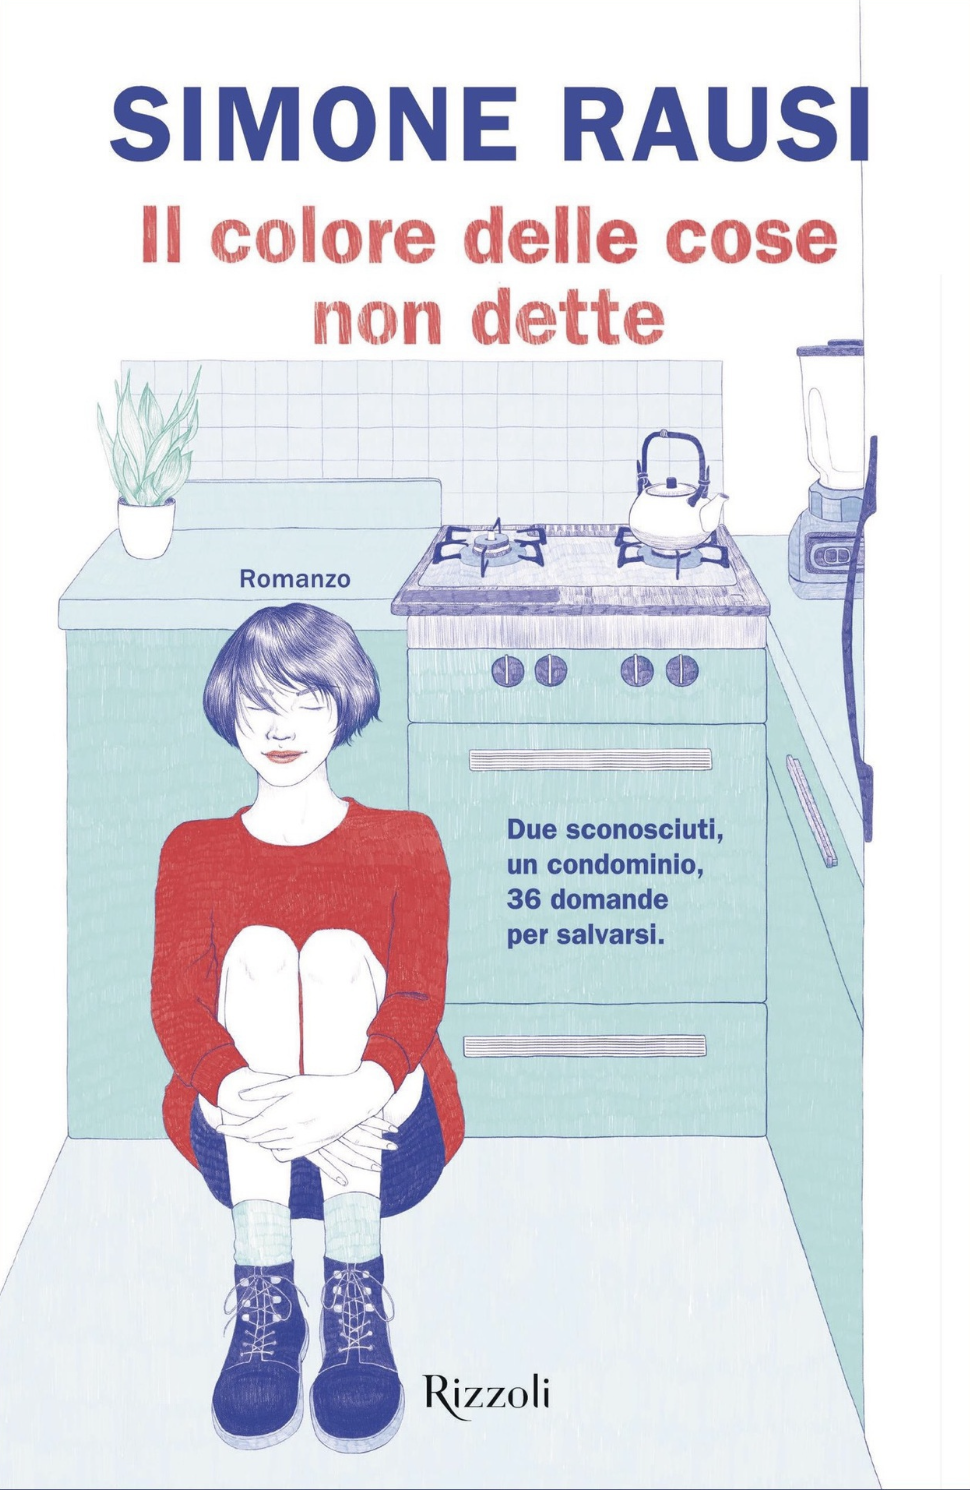 Clicca sulla cover per acquistare il romanzo di Simone Rausi